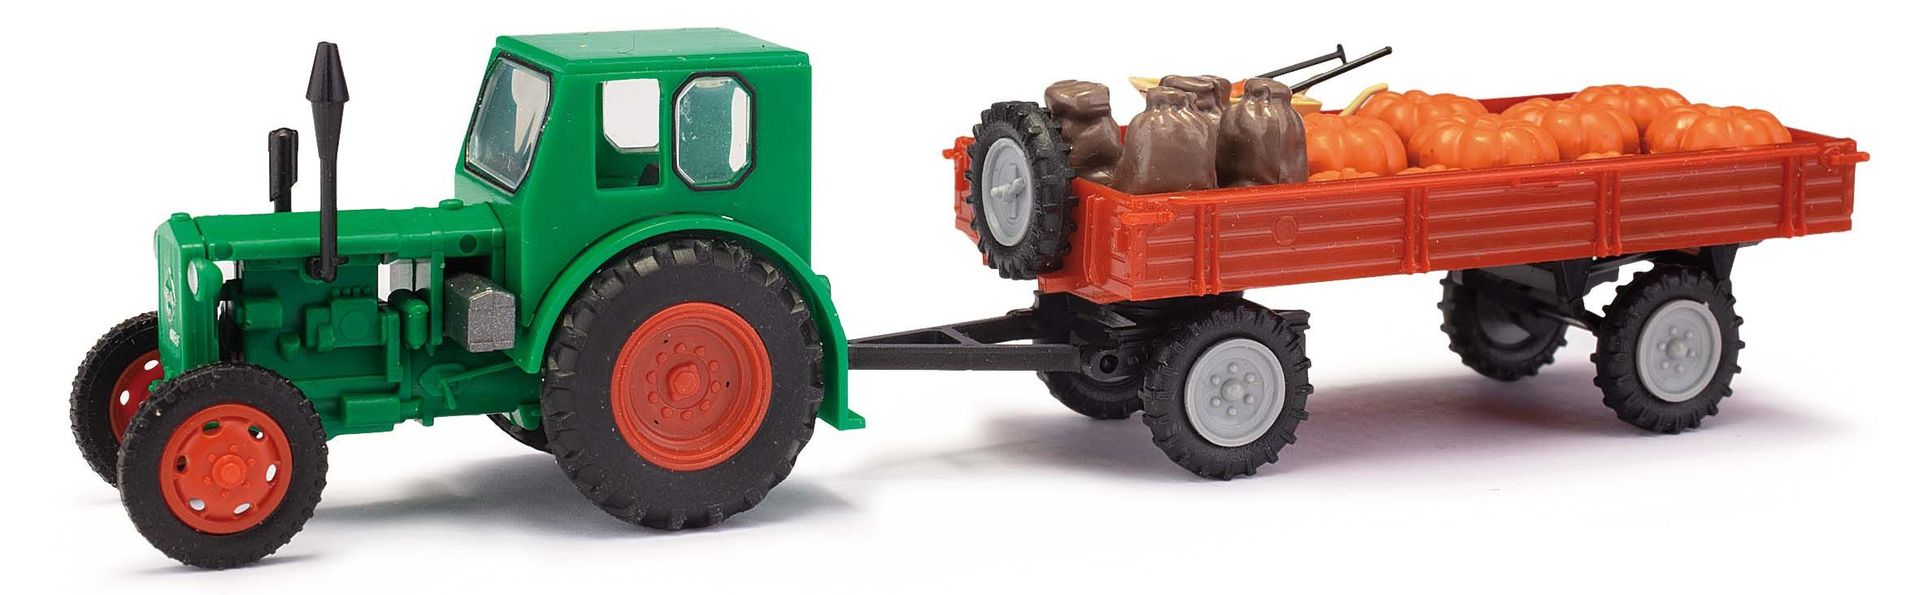 Melhose 210006420 - Traktor Pionier RS01 mit Kübissen und Säcken H0 1:87